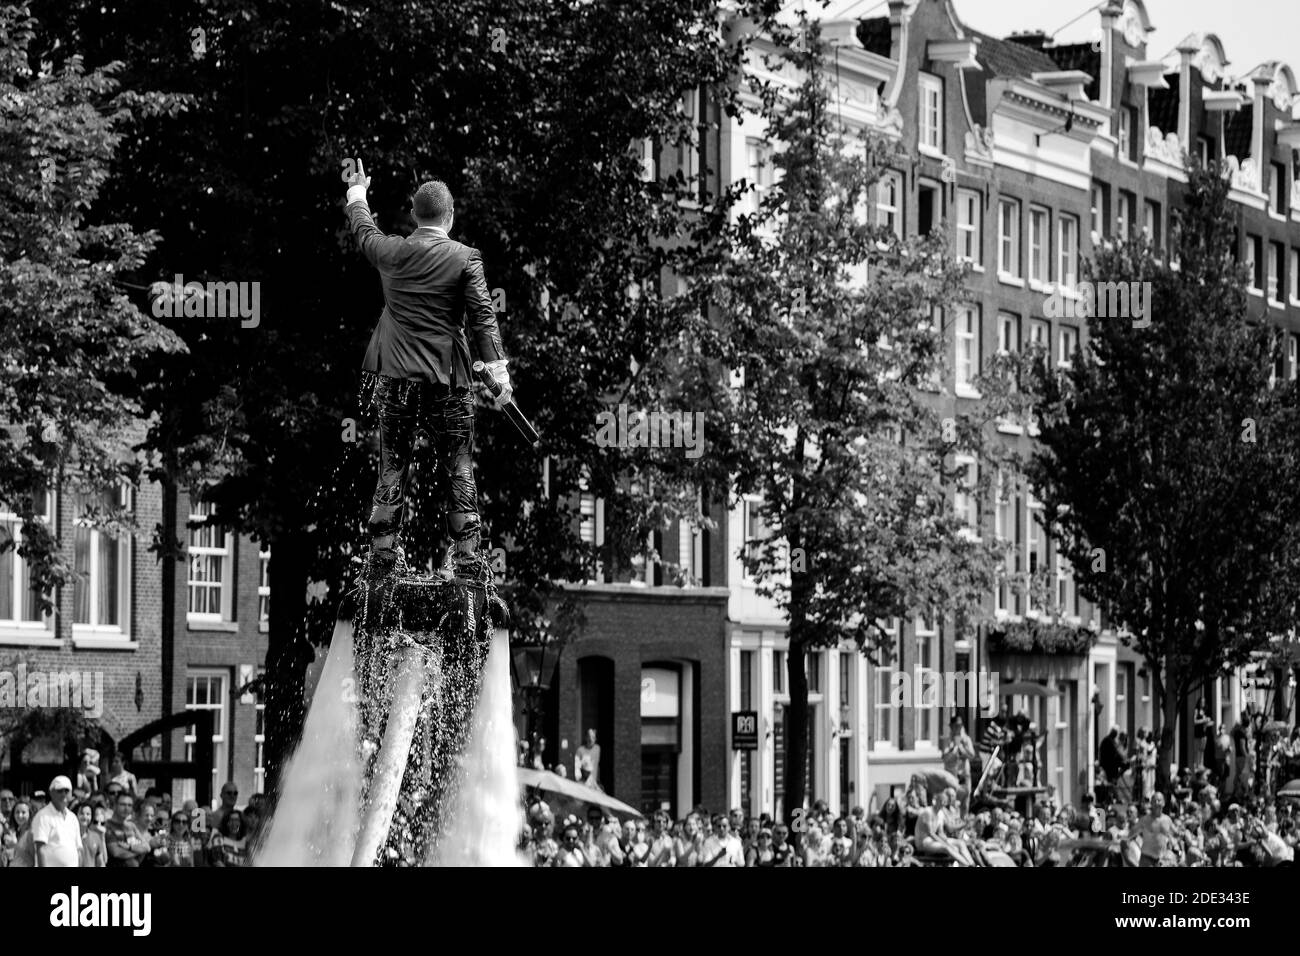 L'uomo sul flyboard in costume da bagno si innalza ben al di sopra della folla durante l'orgoglio gay nei canali di Amsterdam. Fotografia in bianco e nero. Foto Stock